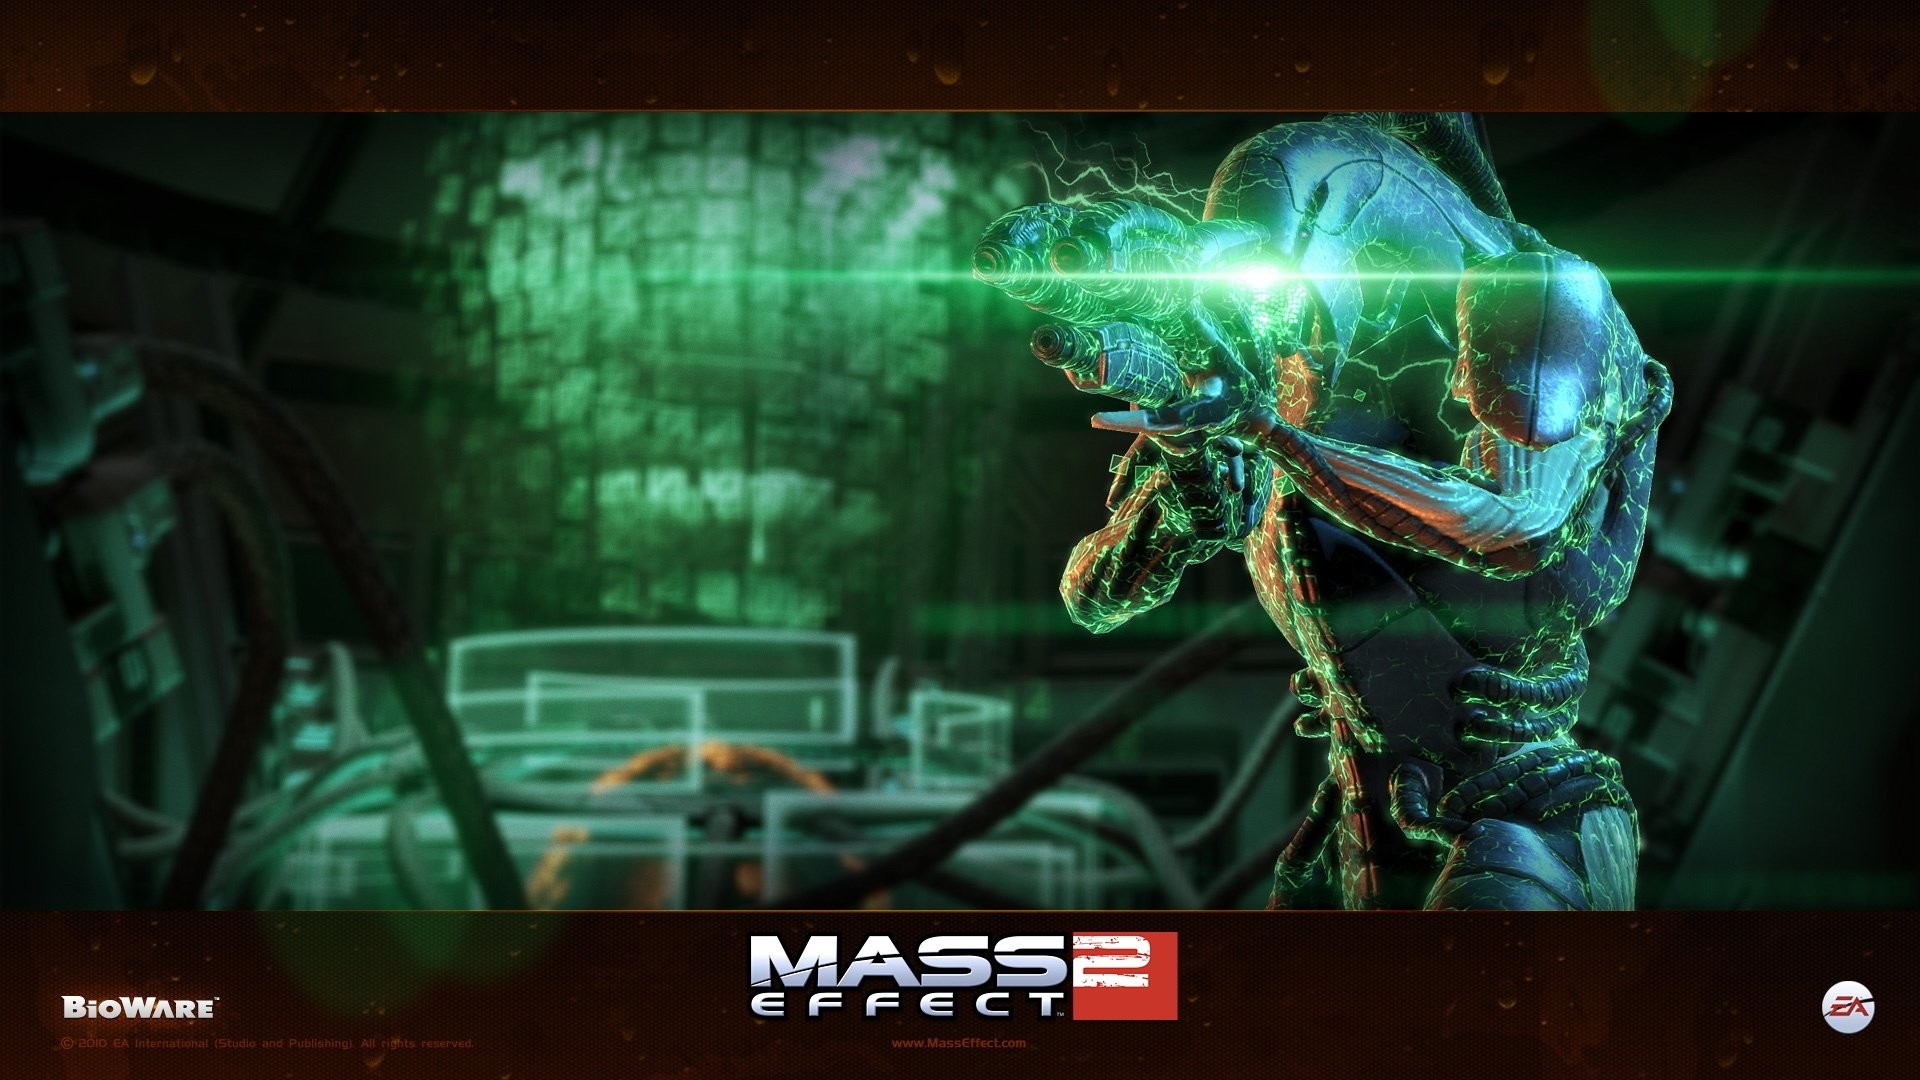 1920x1080 Wallpaper zu Mass Effect 2 herunterladen